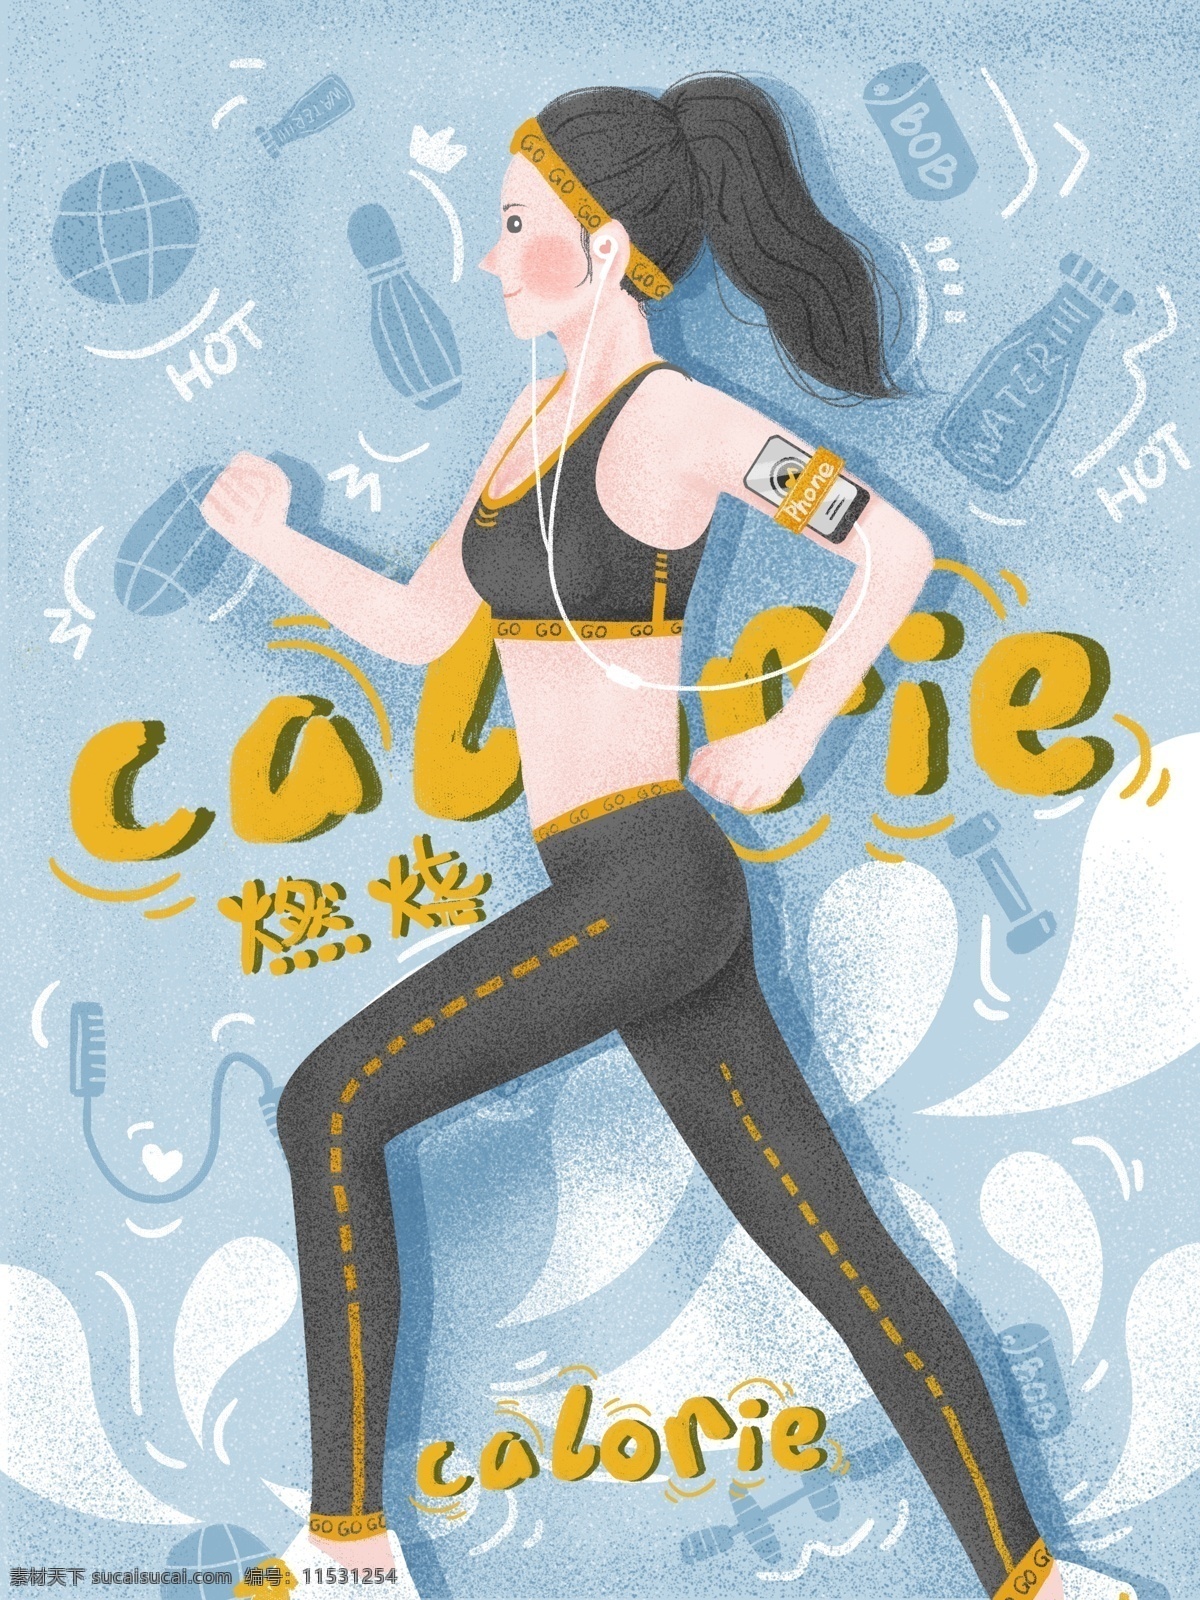 活力 小 姐姐 跑步 运动 燃烧 的卡 路里 创意 海报 青春活力 阳光女孩 高马尾 运动背心 运动裤 吸汗发圈 卡路里 健身 健身海报